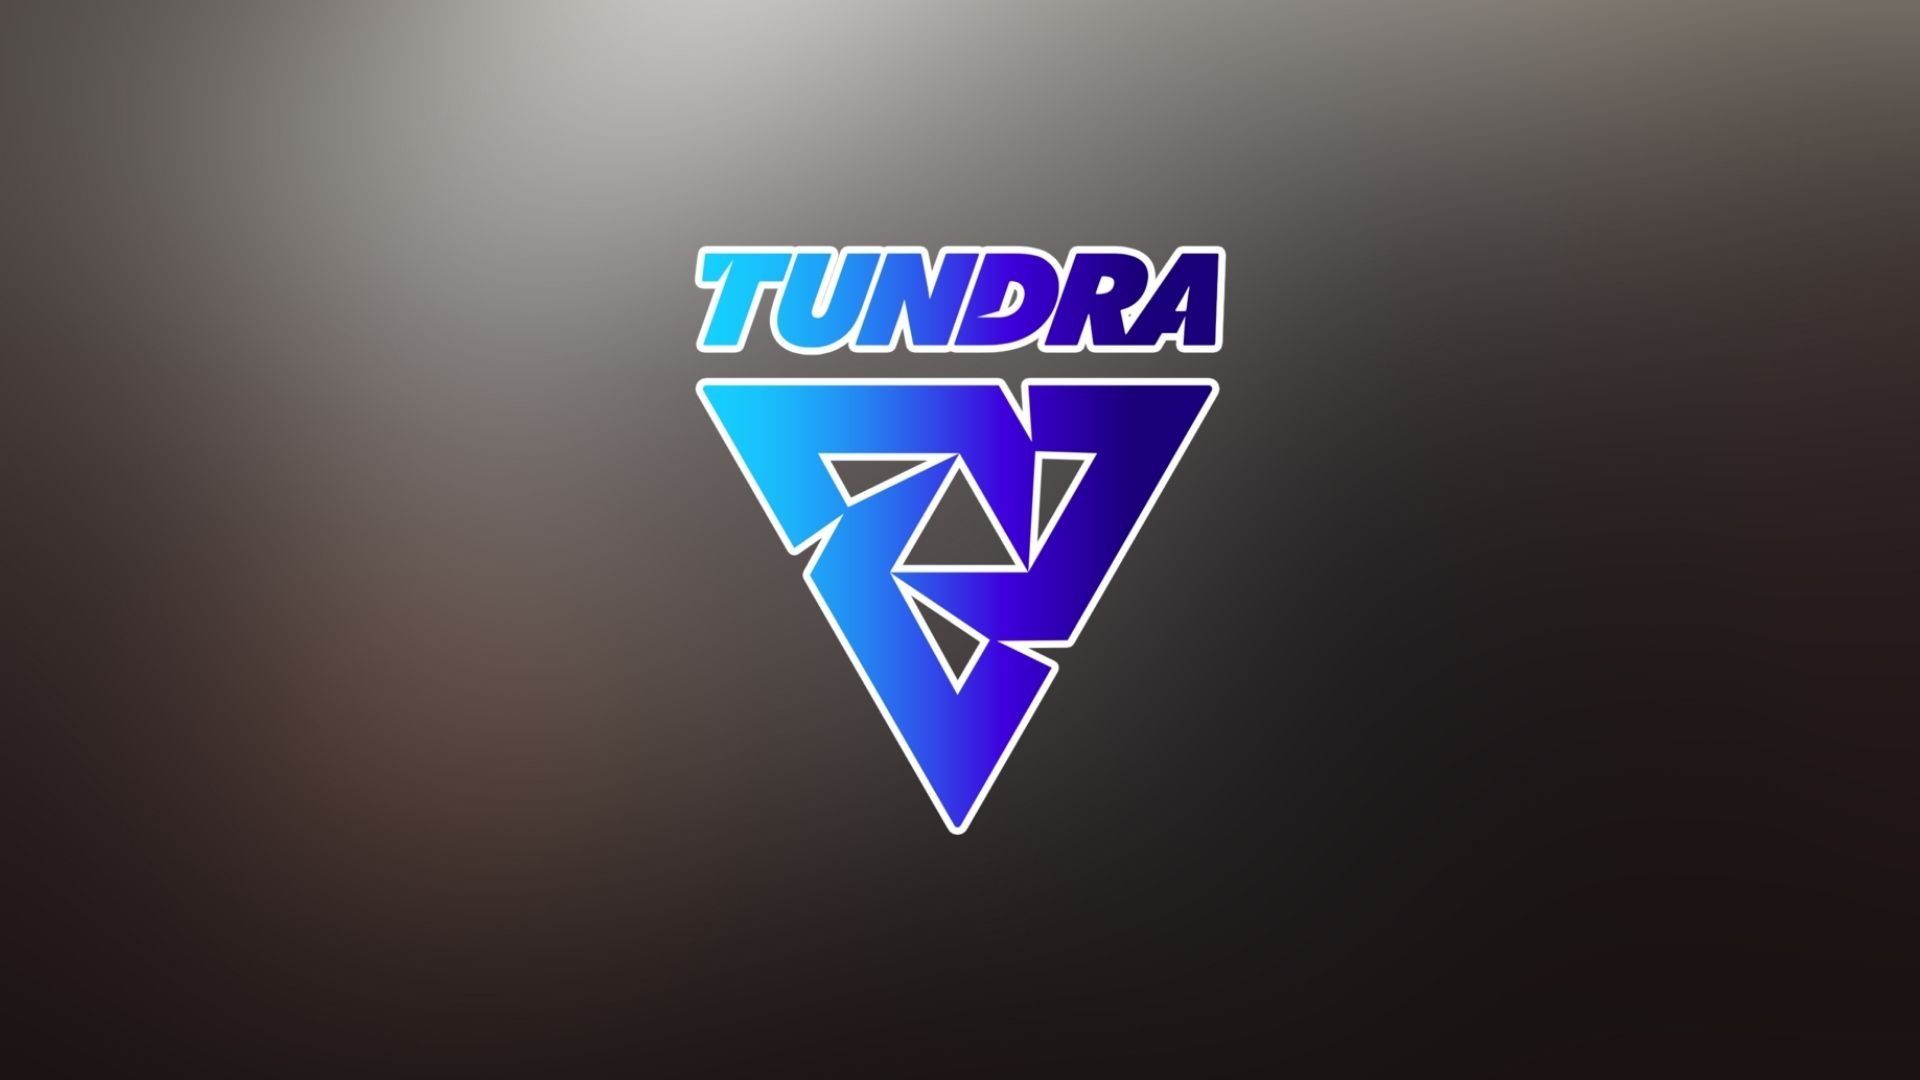 Tundra обыграла Team Secret в рамках DPC S3 для Европы